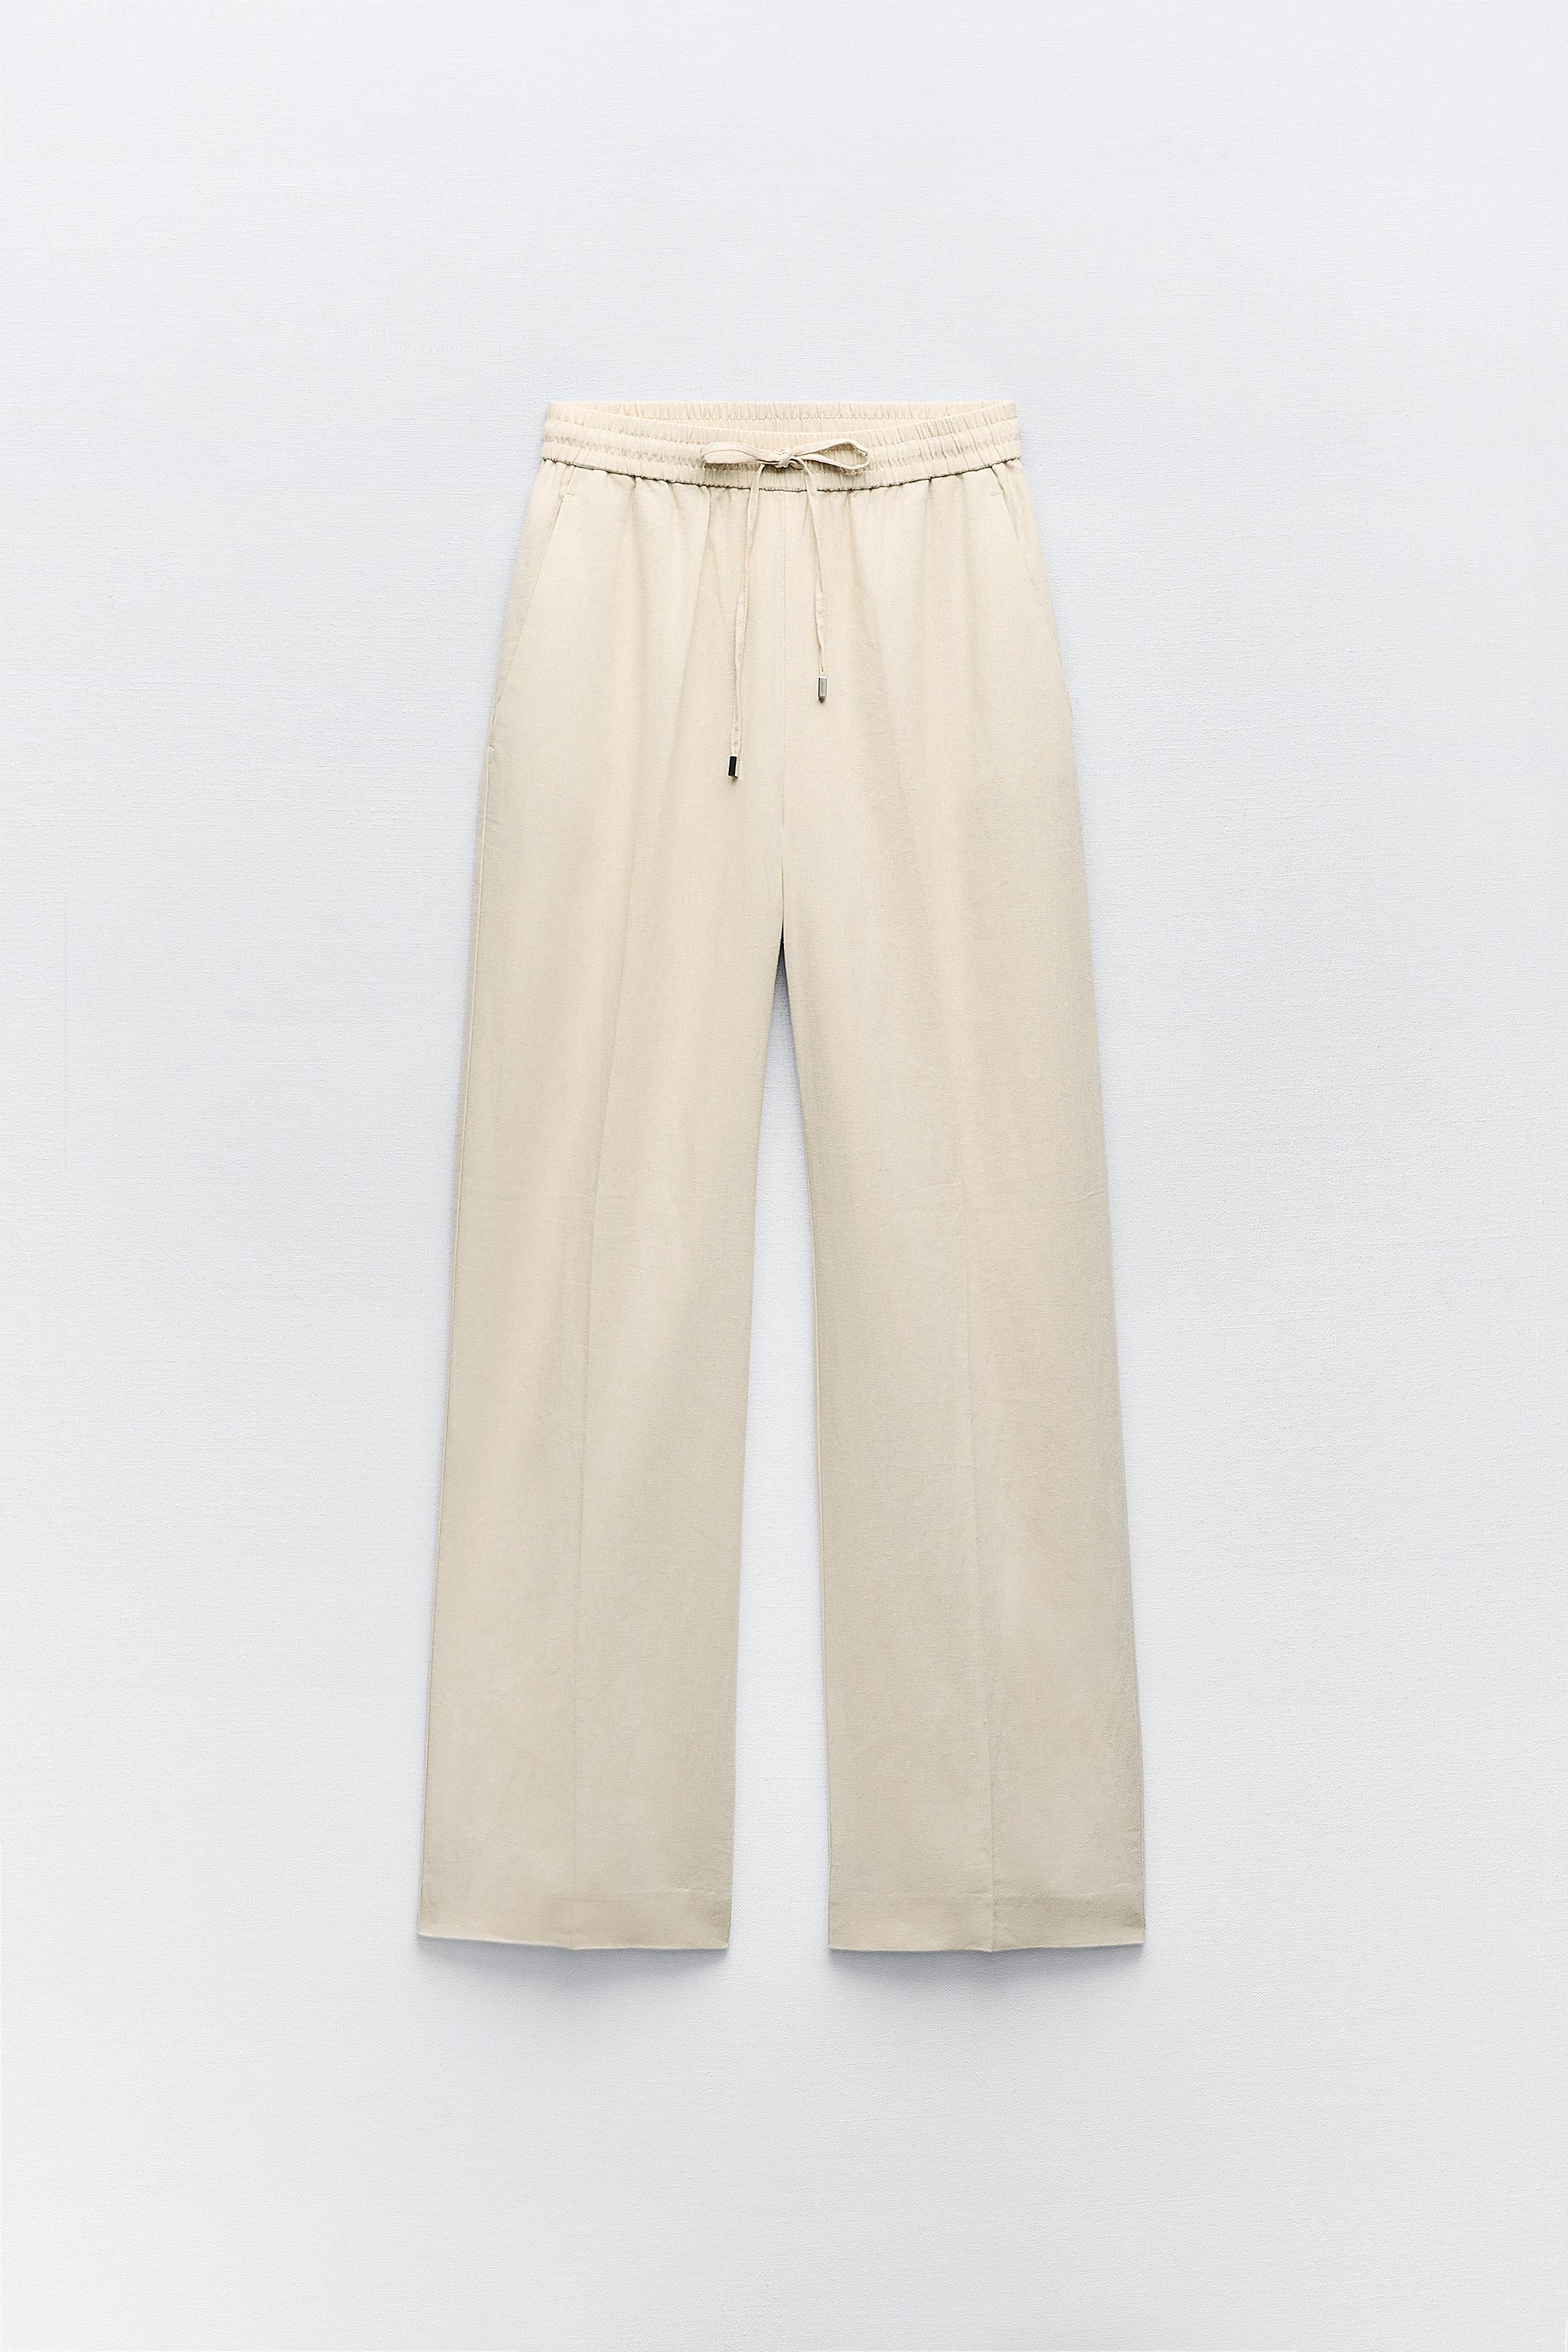 Women's Linen Pants, Explore our New Arrivals